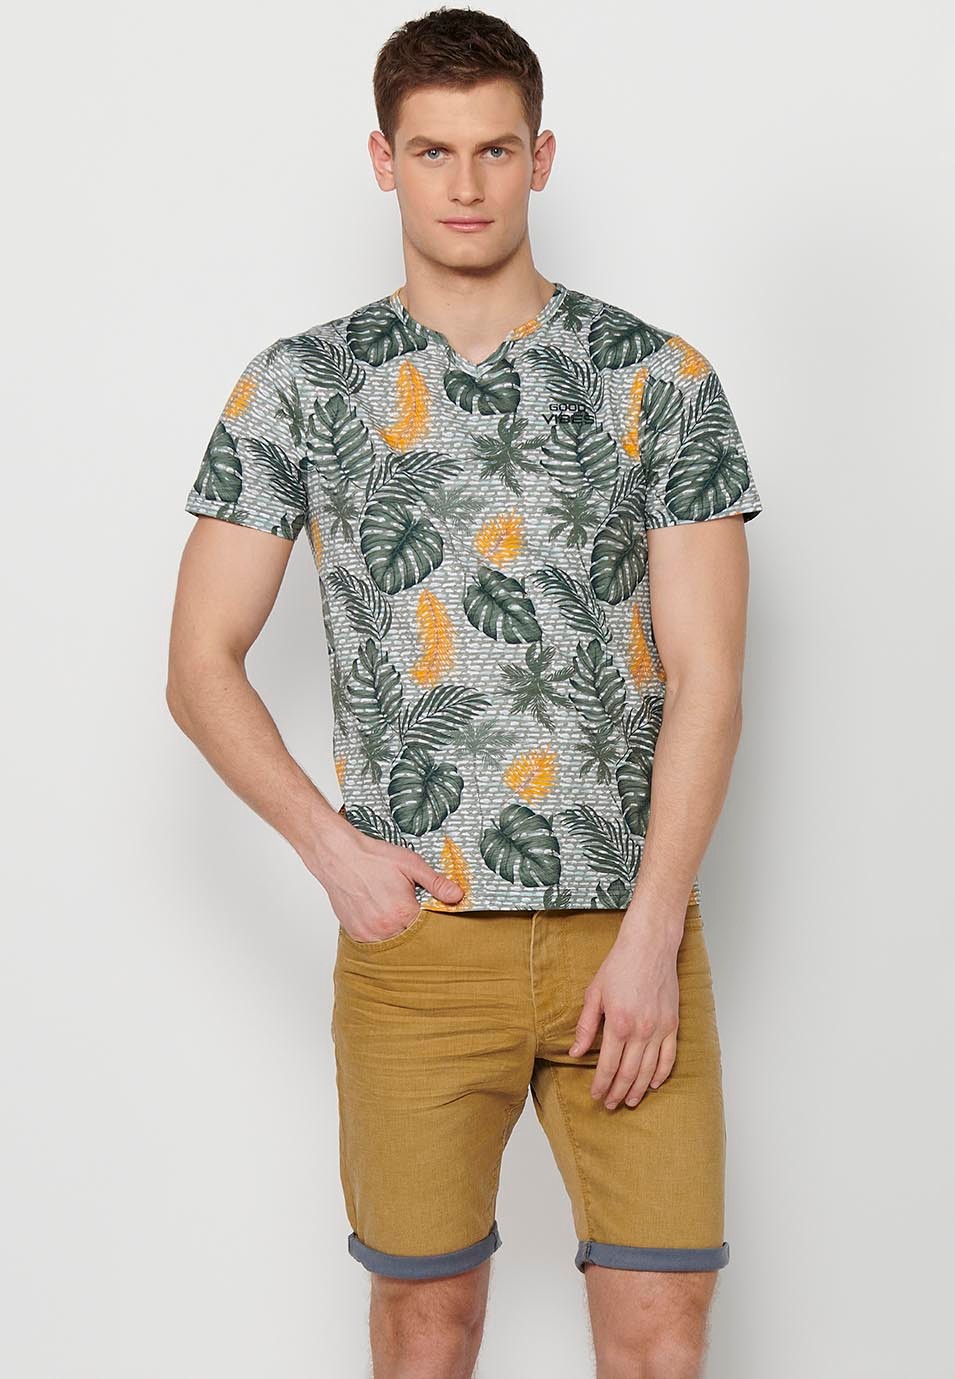 Samarreta màniga curta de cotó amb estampat tropical multicolor per a home